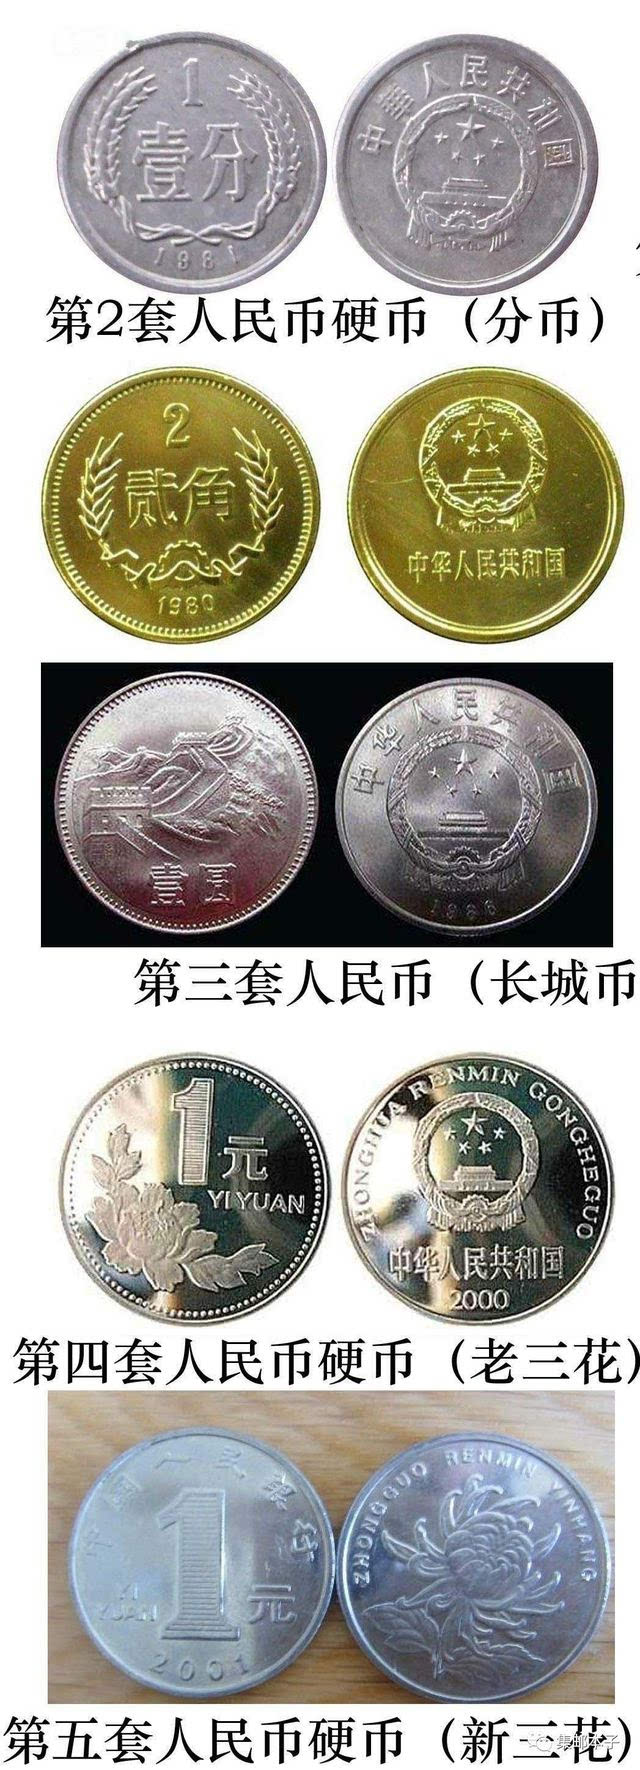 中国第五套人民币硬币新三花伴我们前行